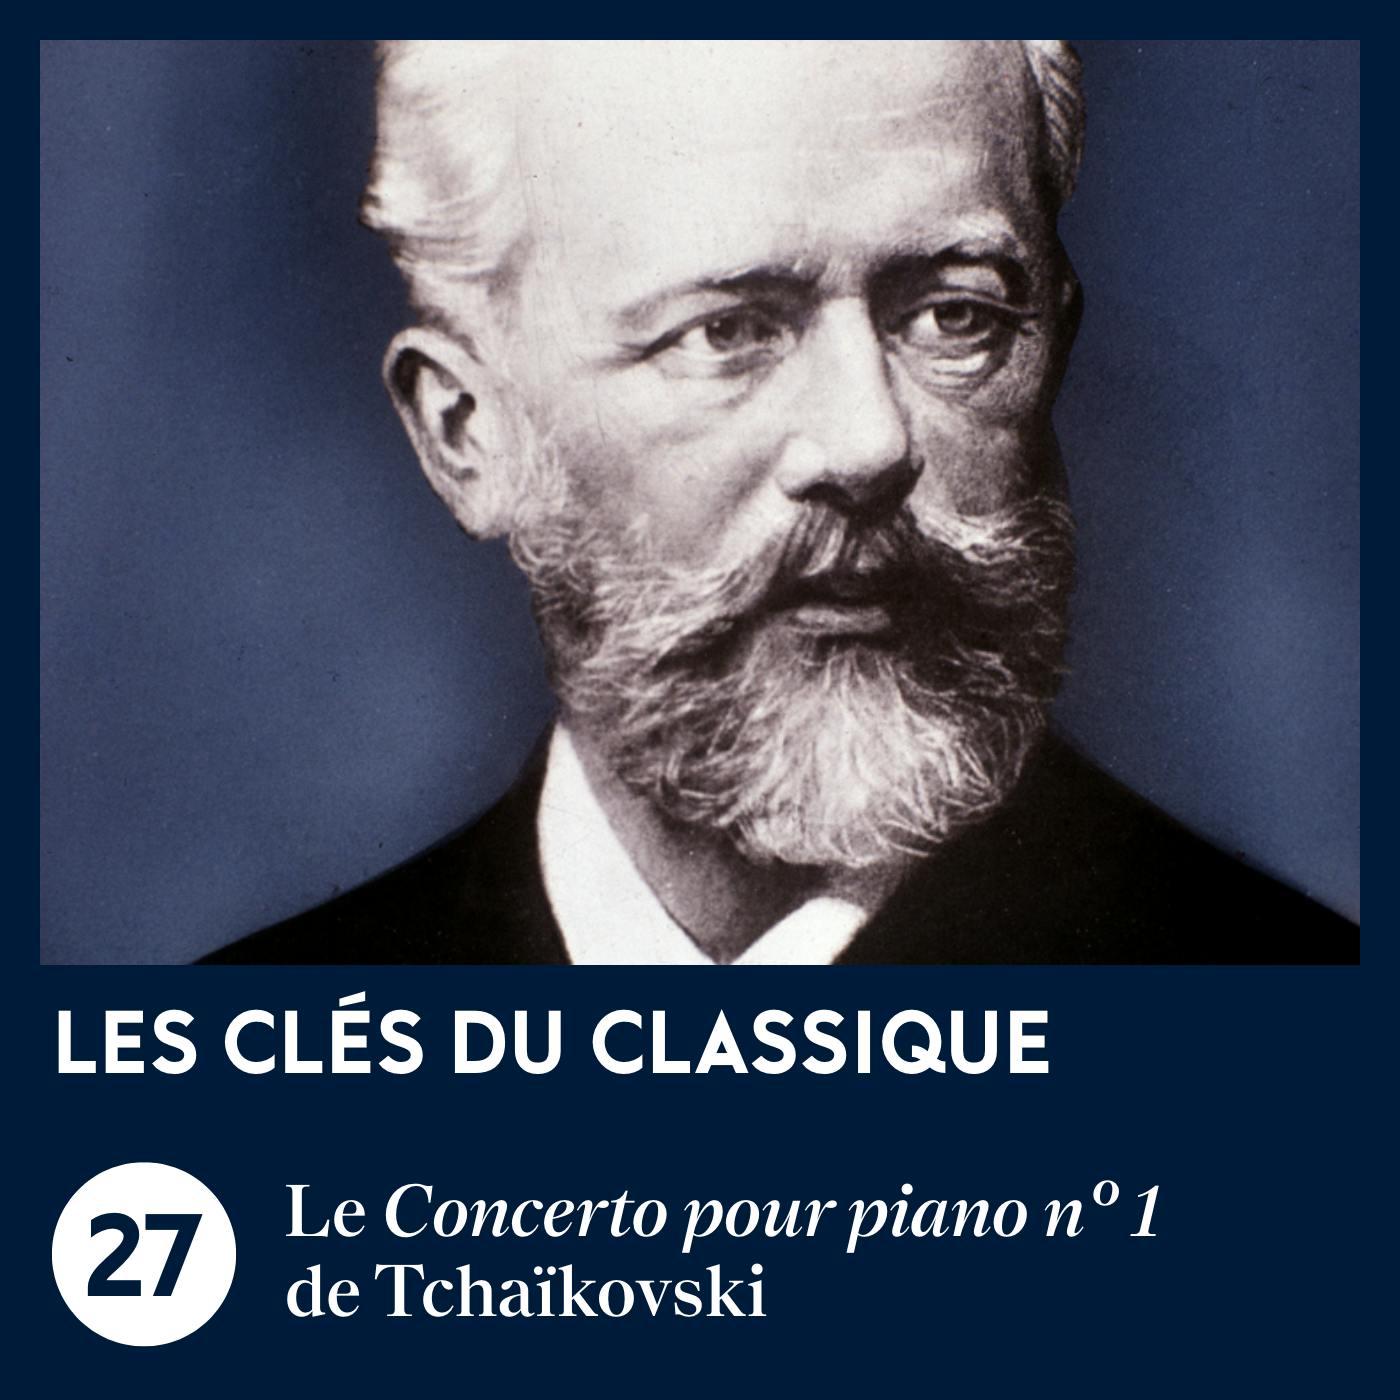 Le Concerto pour piano n° 1 de Tchaïkovski | Les Clés du classique #27